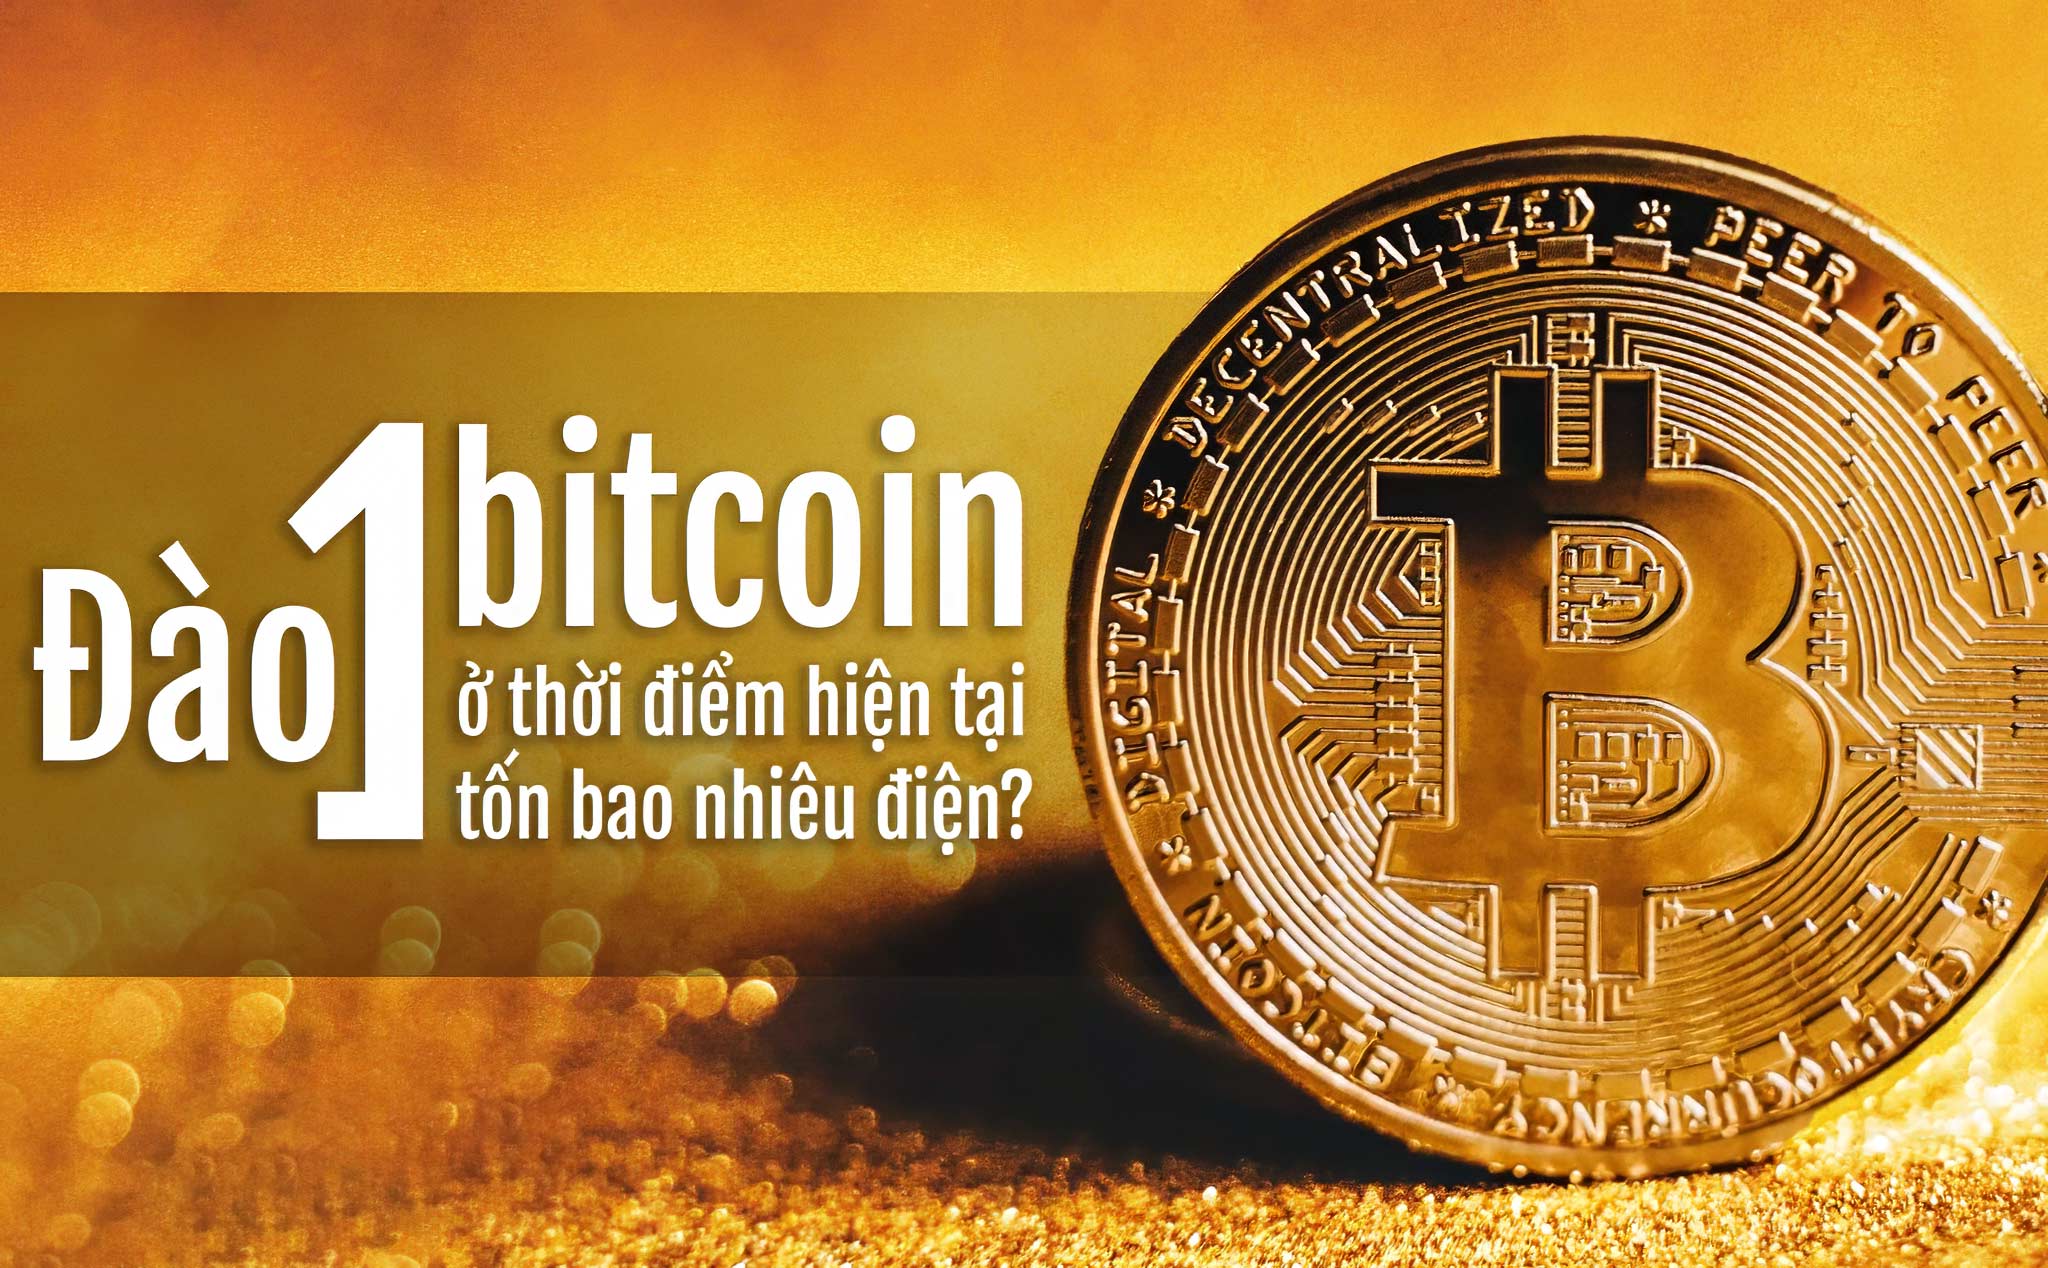 Đào 1 bitcoin ở thời điểm hiện tại tốn bao nhiêu điện?